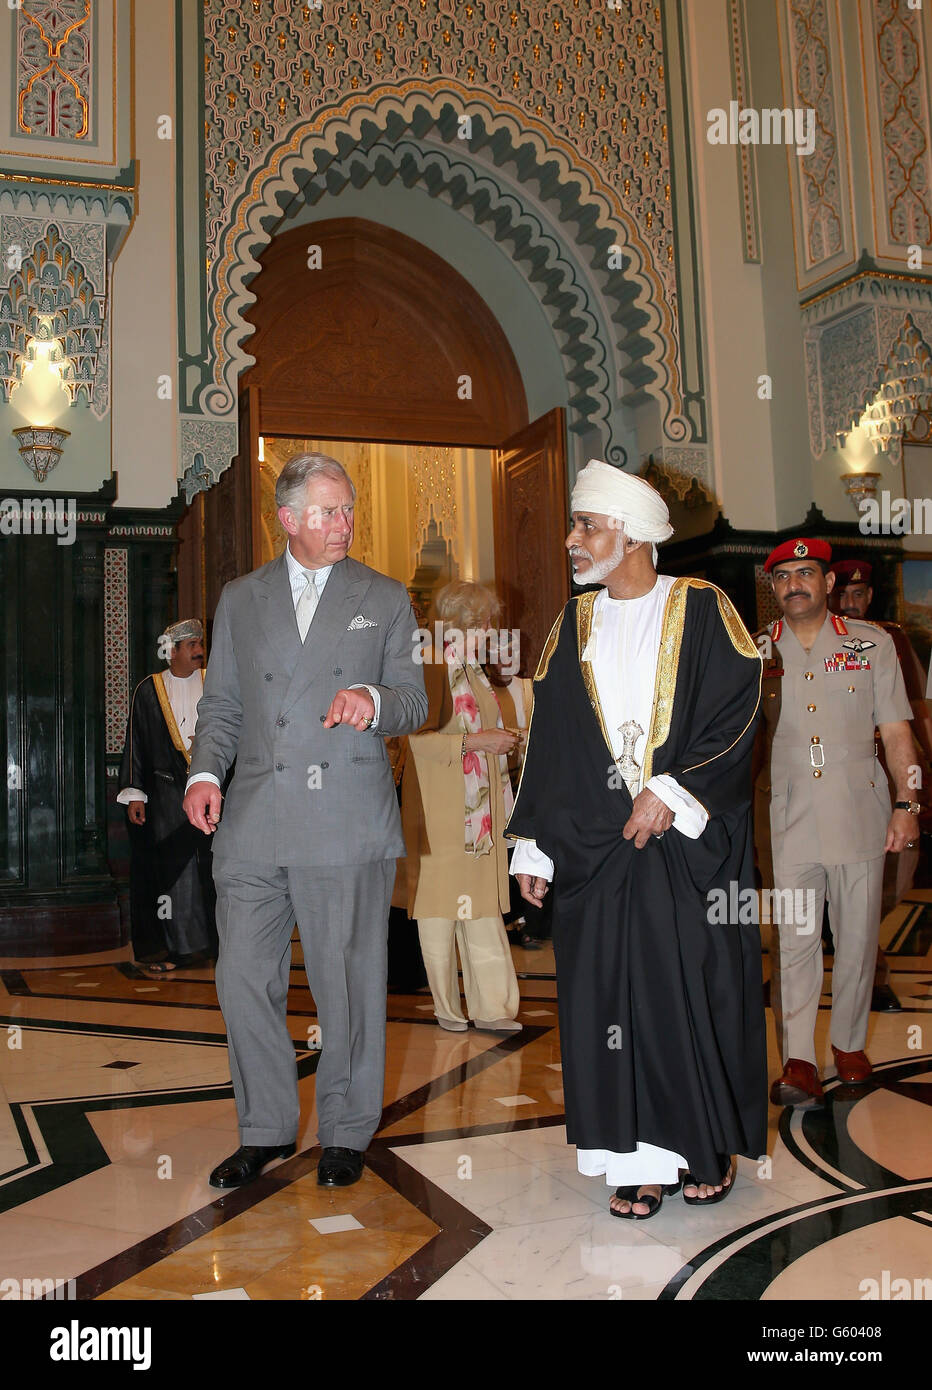 Le prince de Galles et la duchesse de Cornouailles arrivent pour un public avec le Sultan d'Oman Qaboos bin Said Al Saidat (à droite) au palais du Sultan à Bayt al Baraka à Muscat, Oman. Banque D'Images